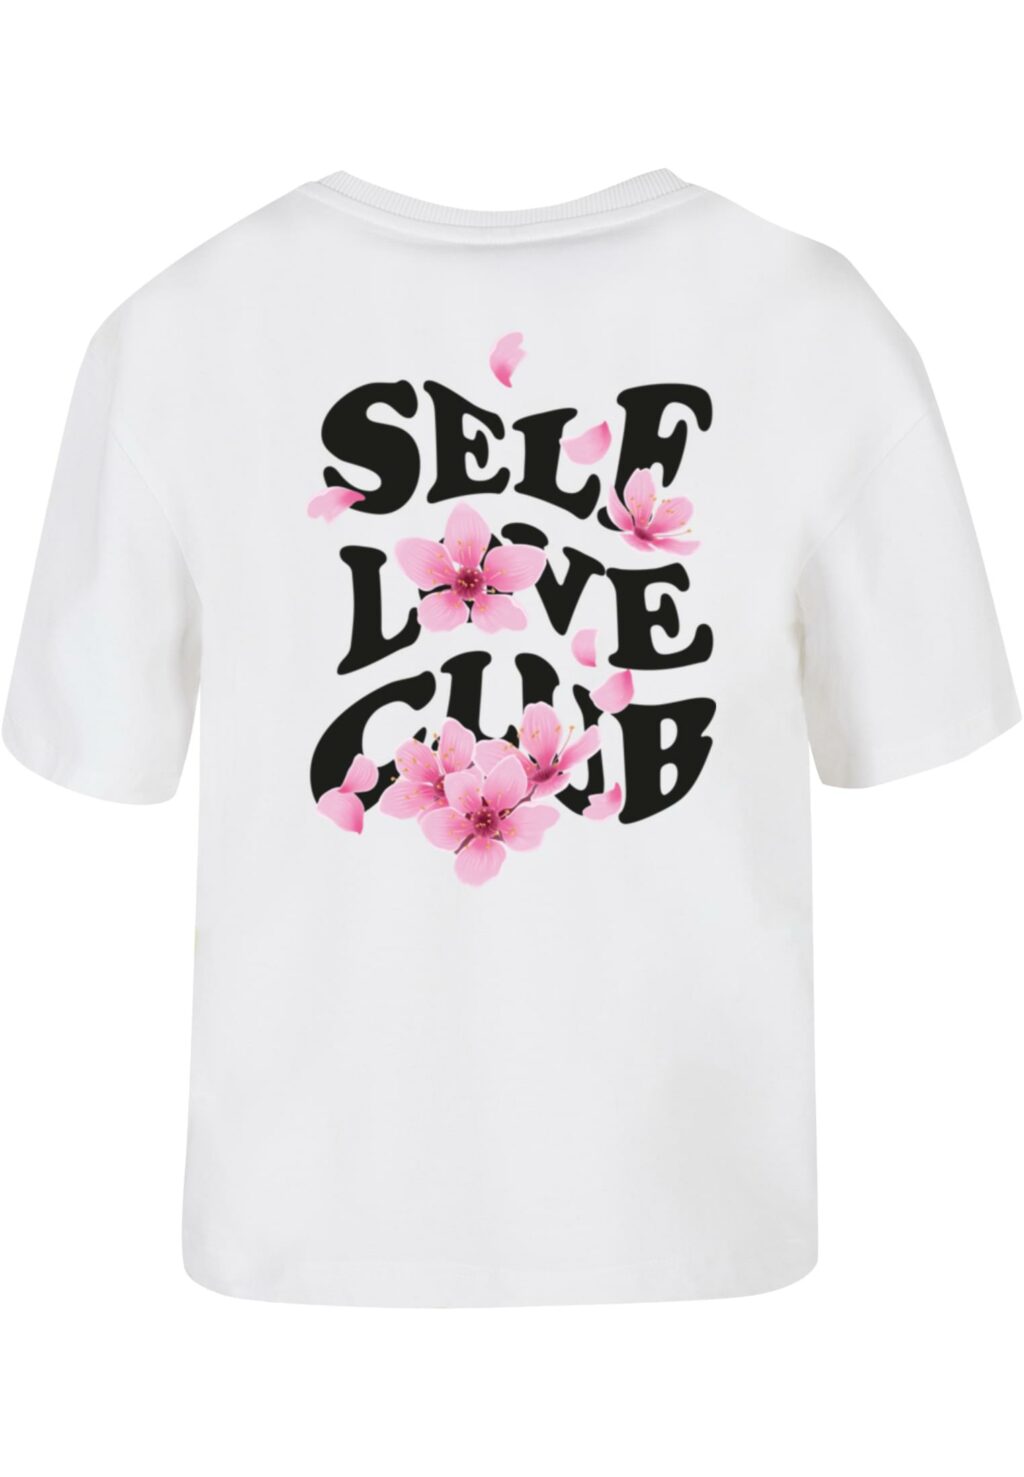 Self Love Club Tee white MST012